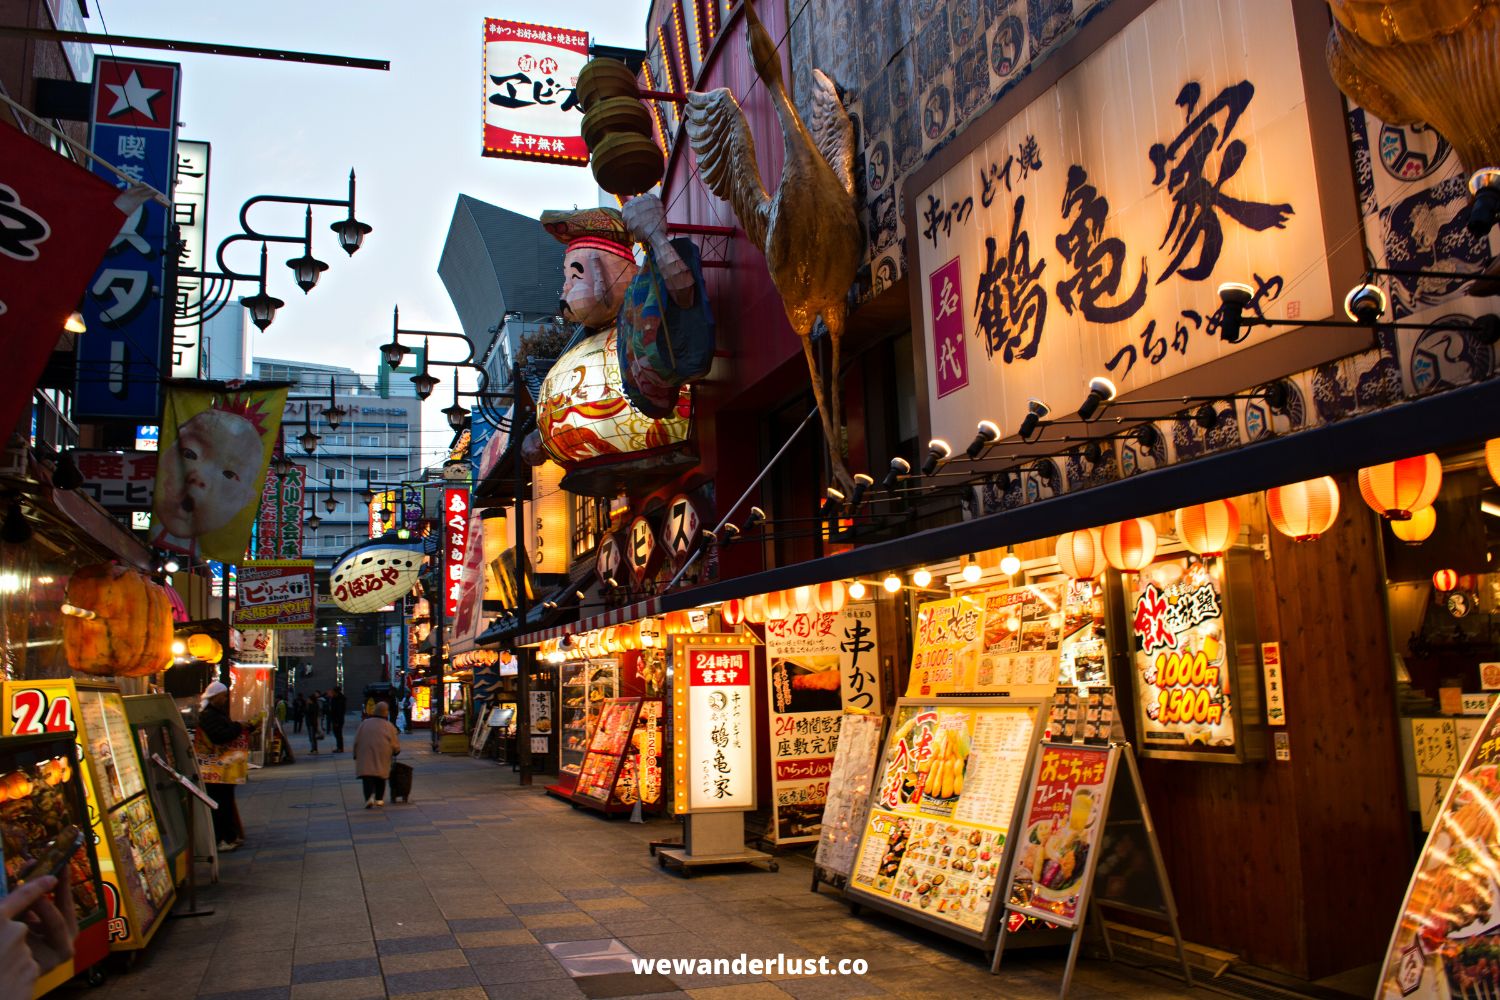 shops in lit up alleyway in japan